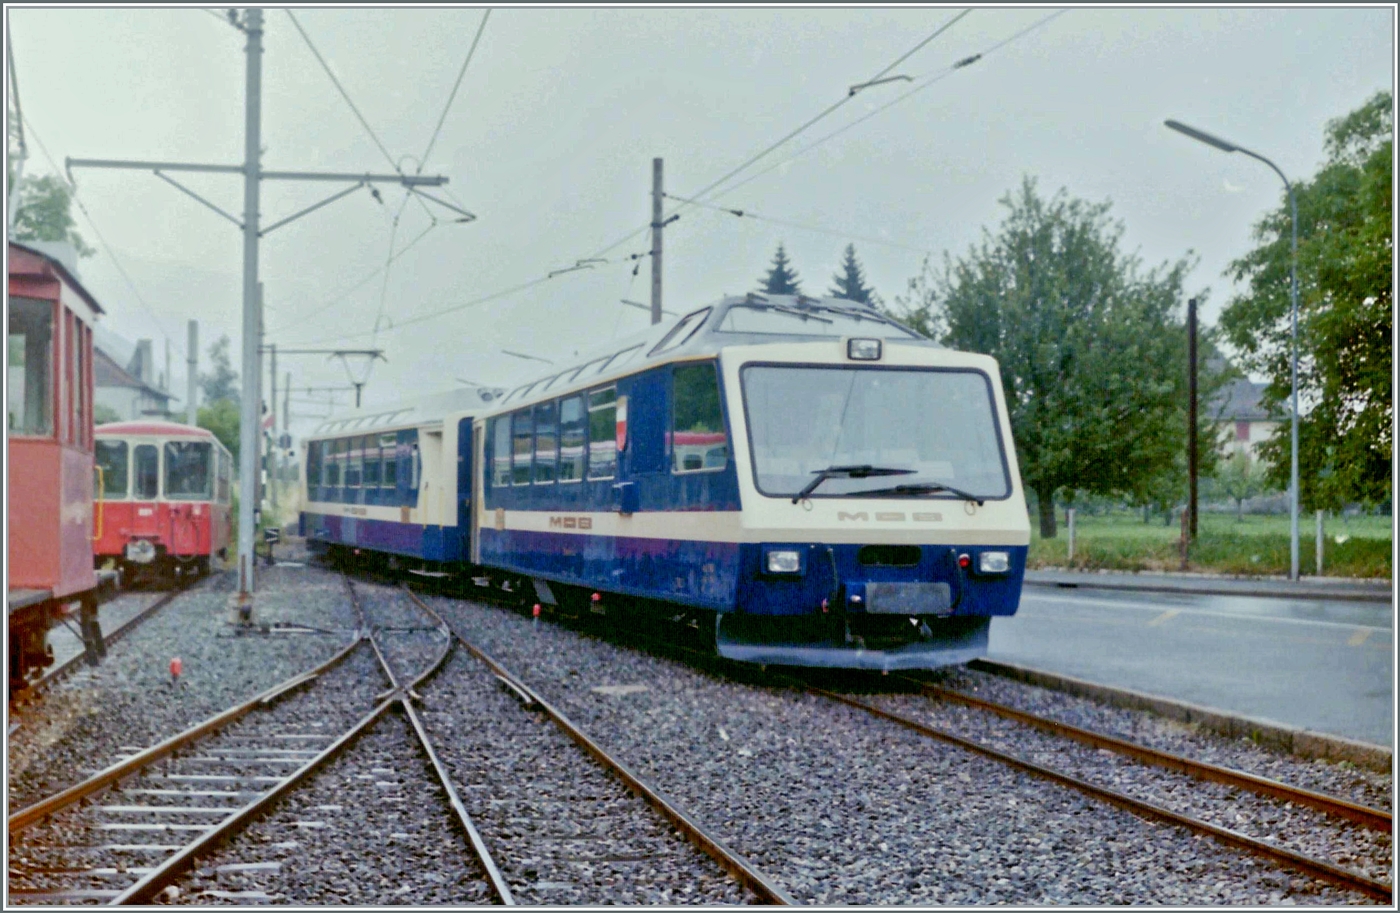 Als Testfahrt für eine künftige Gruppenreise ab Blonay unternahm der damals  **** Superpanoramic Express  genannte Zug via Chamby nach Blonay. Das Bild zeigt die Einfahrt des Zuges in Blonay mit dem Steuerwagen Ast 116  Lausanne  an der Spitze.

Analogbild vom Juli 1986